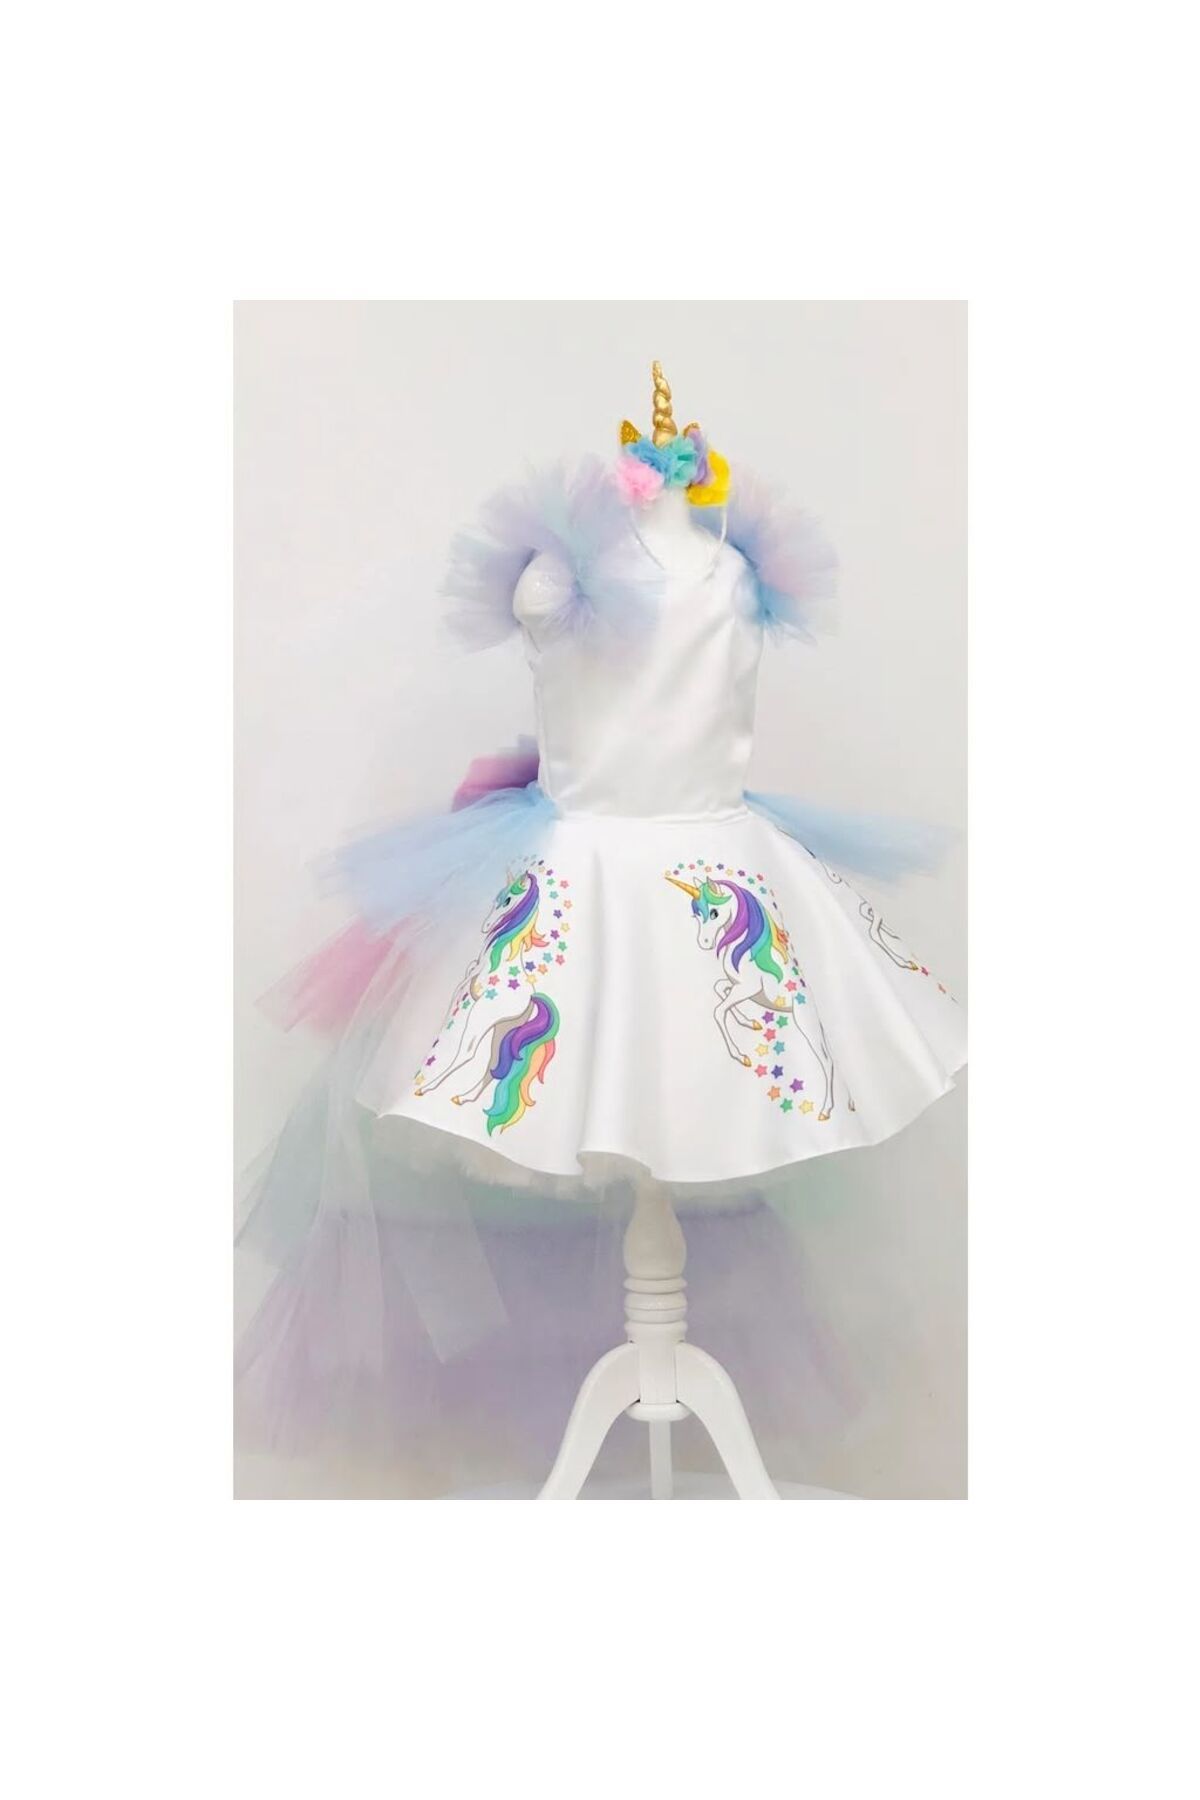 YAĞMUR KOStütüM Unicorn Baskılı My Little Pony Kız Çocuk Doğumgünü Elbise&kostüm